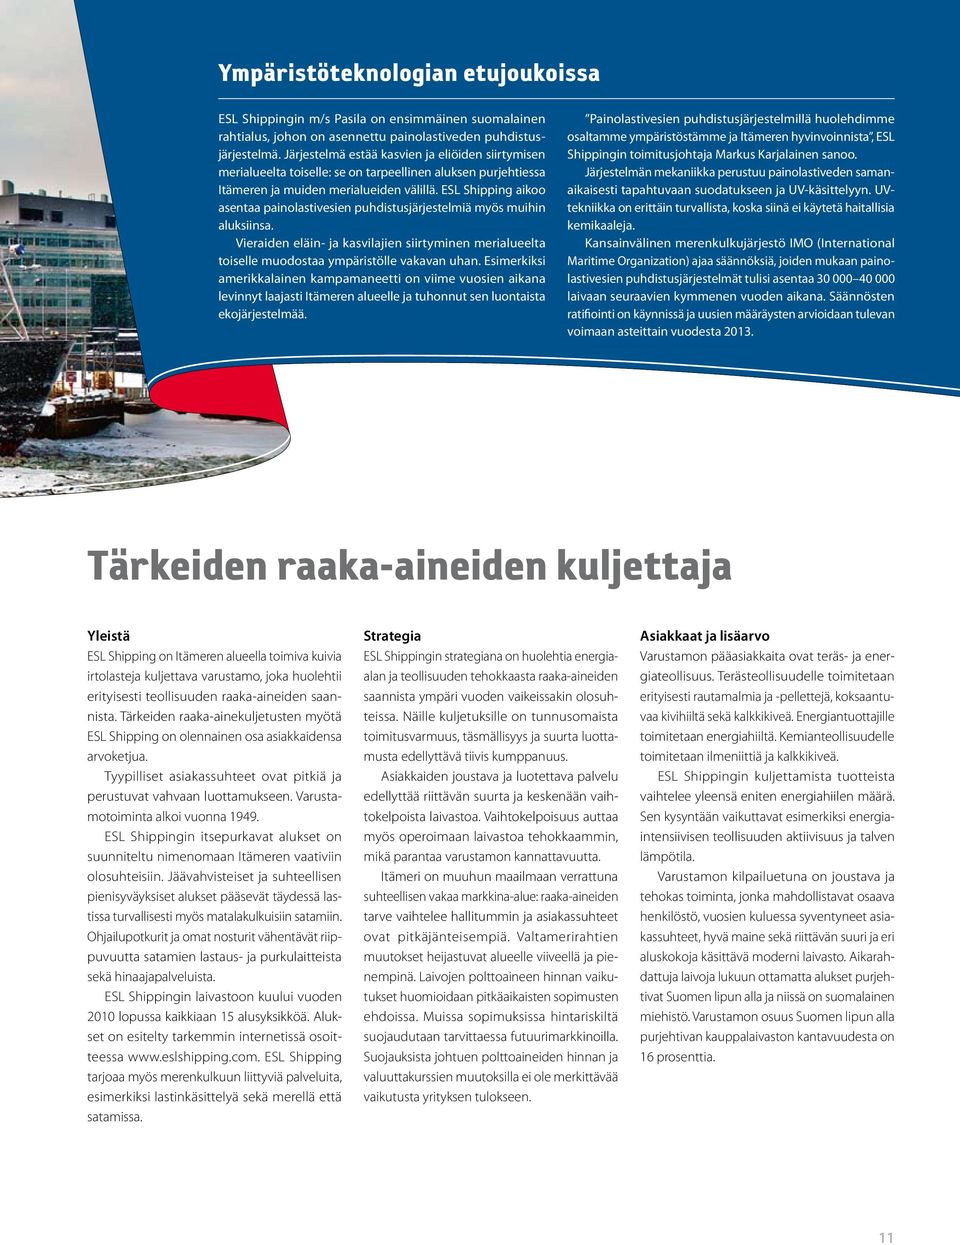 ESL Shipping aikoo asentaa painolastivesien puhdistusjärjestelmiä myös muihin aluksiinsa. Vieraiden eläin- ja kasvilajien siirtyminen merialueelta toiselle muodostaa ympäristölle vakavan uhan.